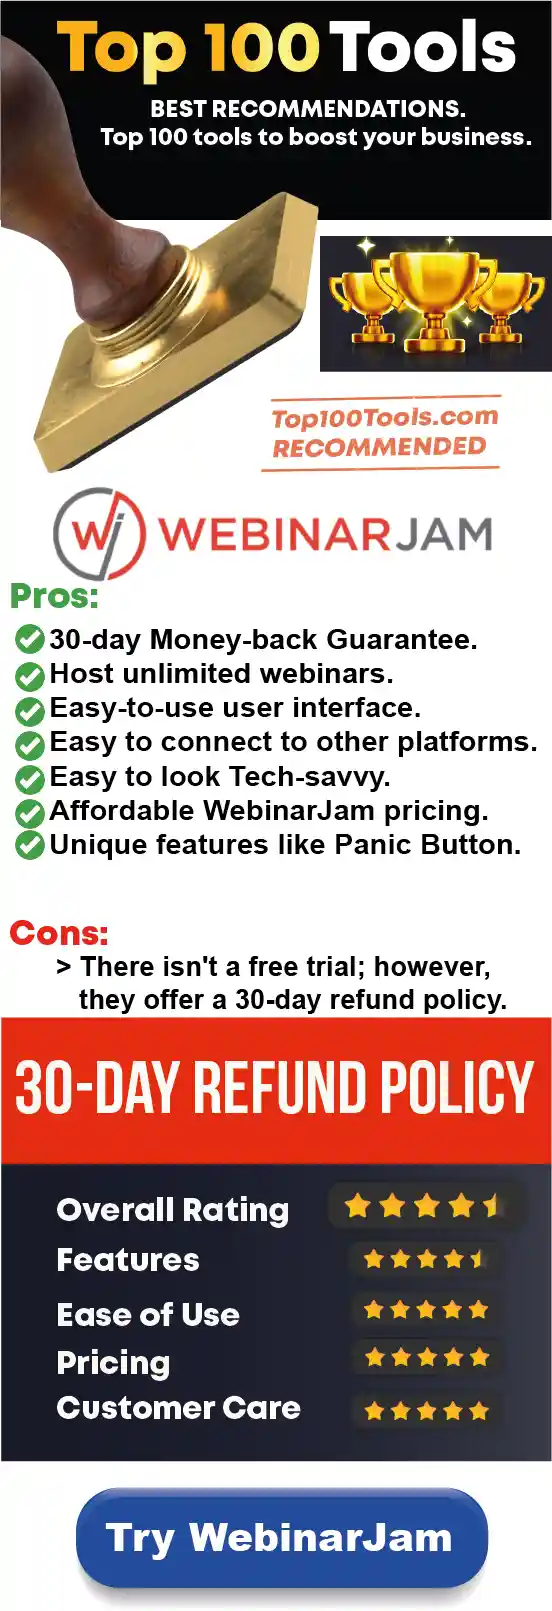 WebinarJam free trial